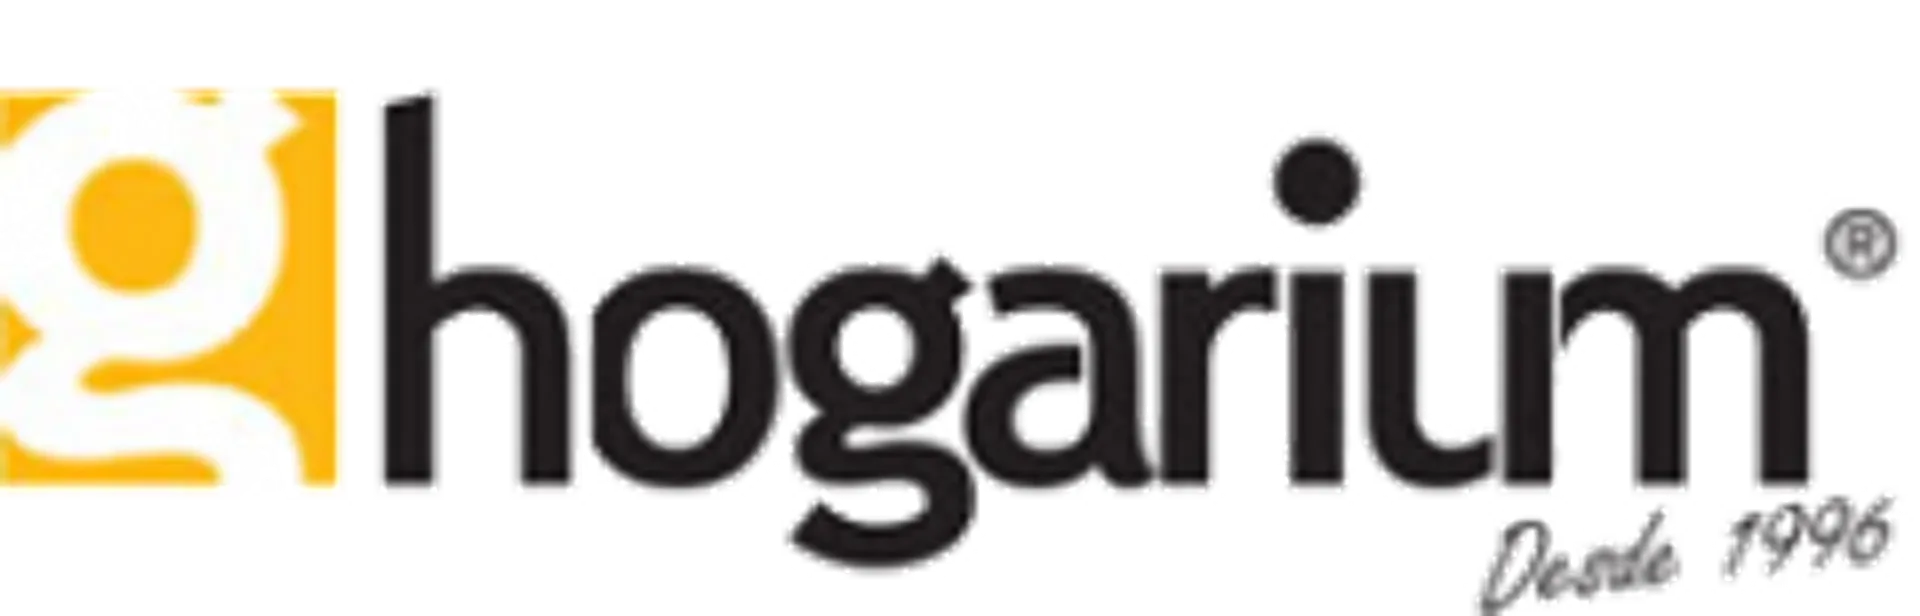 HOGARIUM logo de catálogo